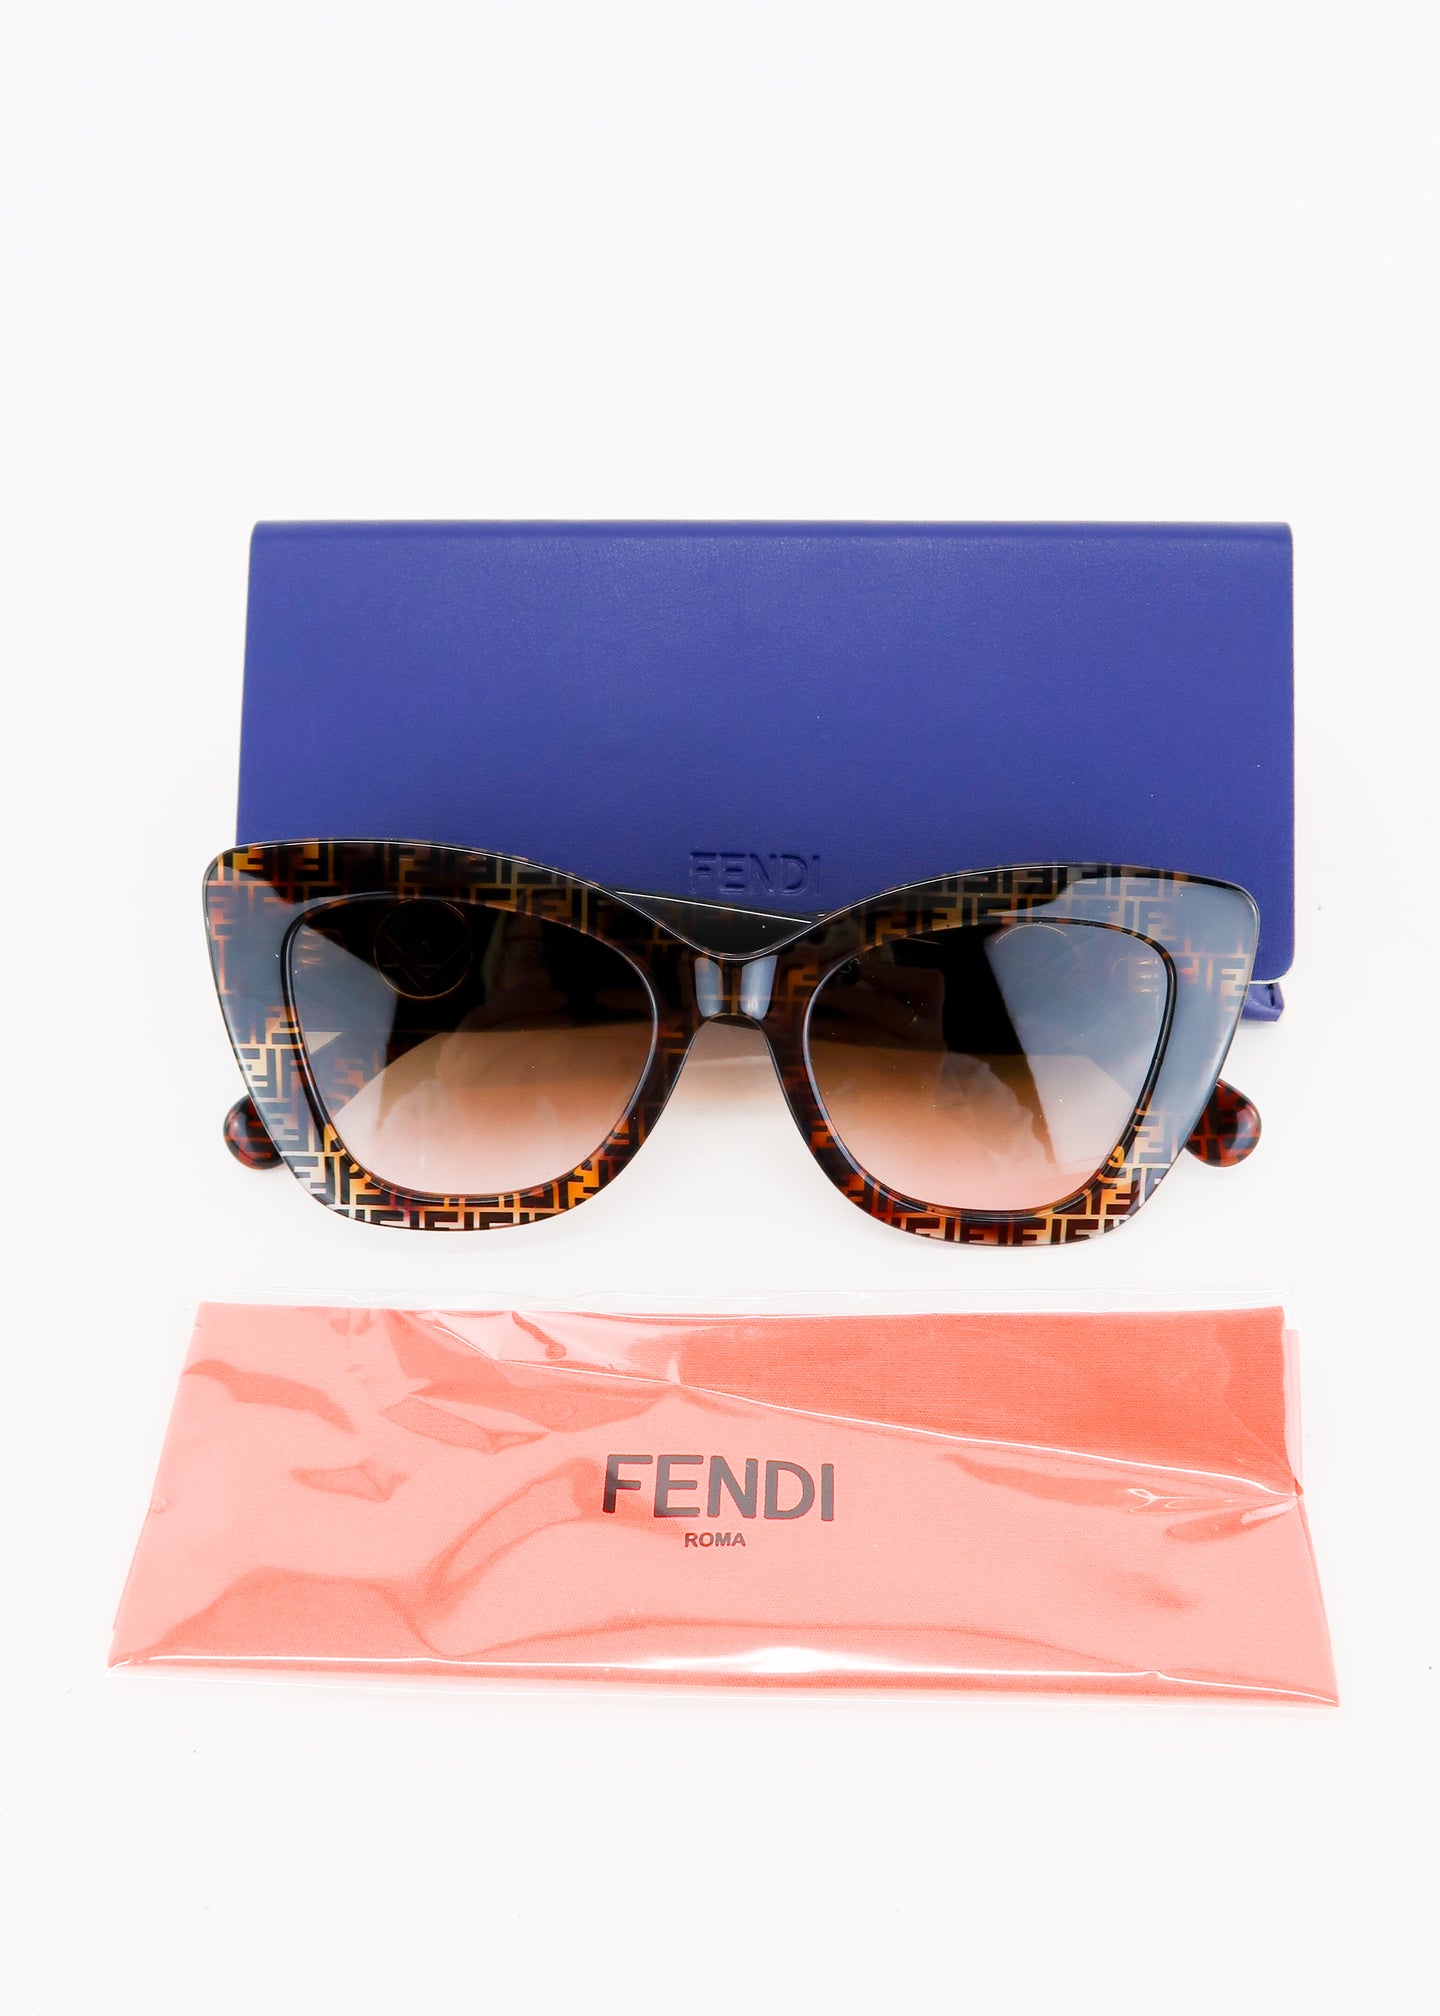 Designer: FENDI Condition:Excellent Item: Sunglasses Place of